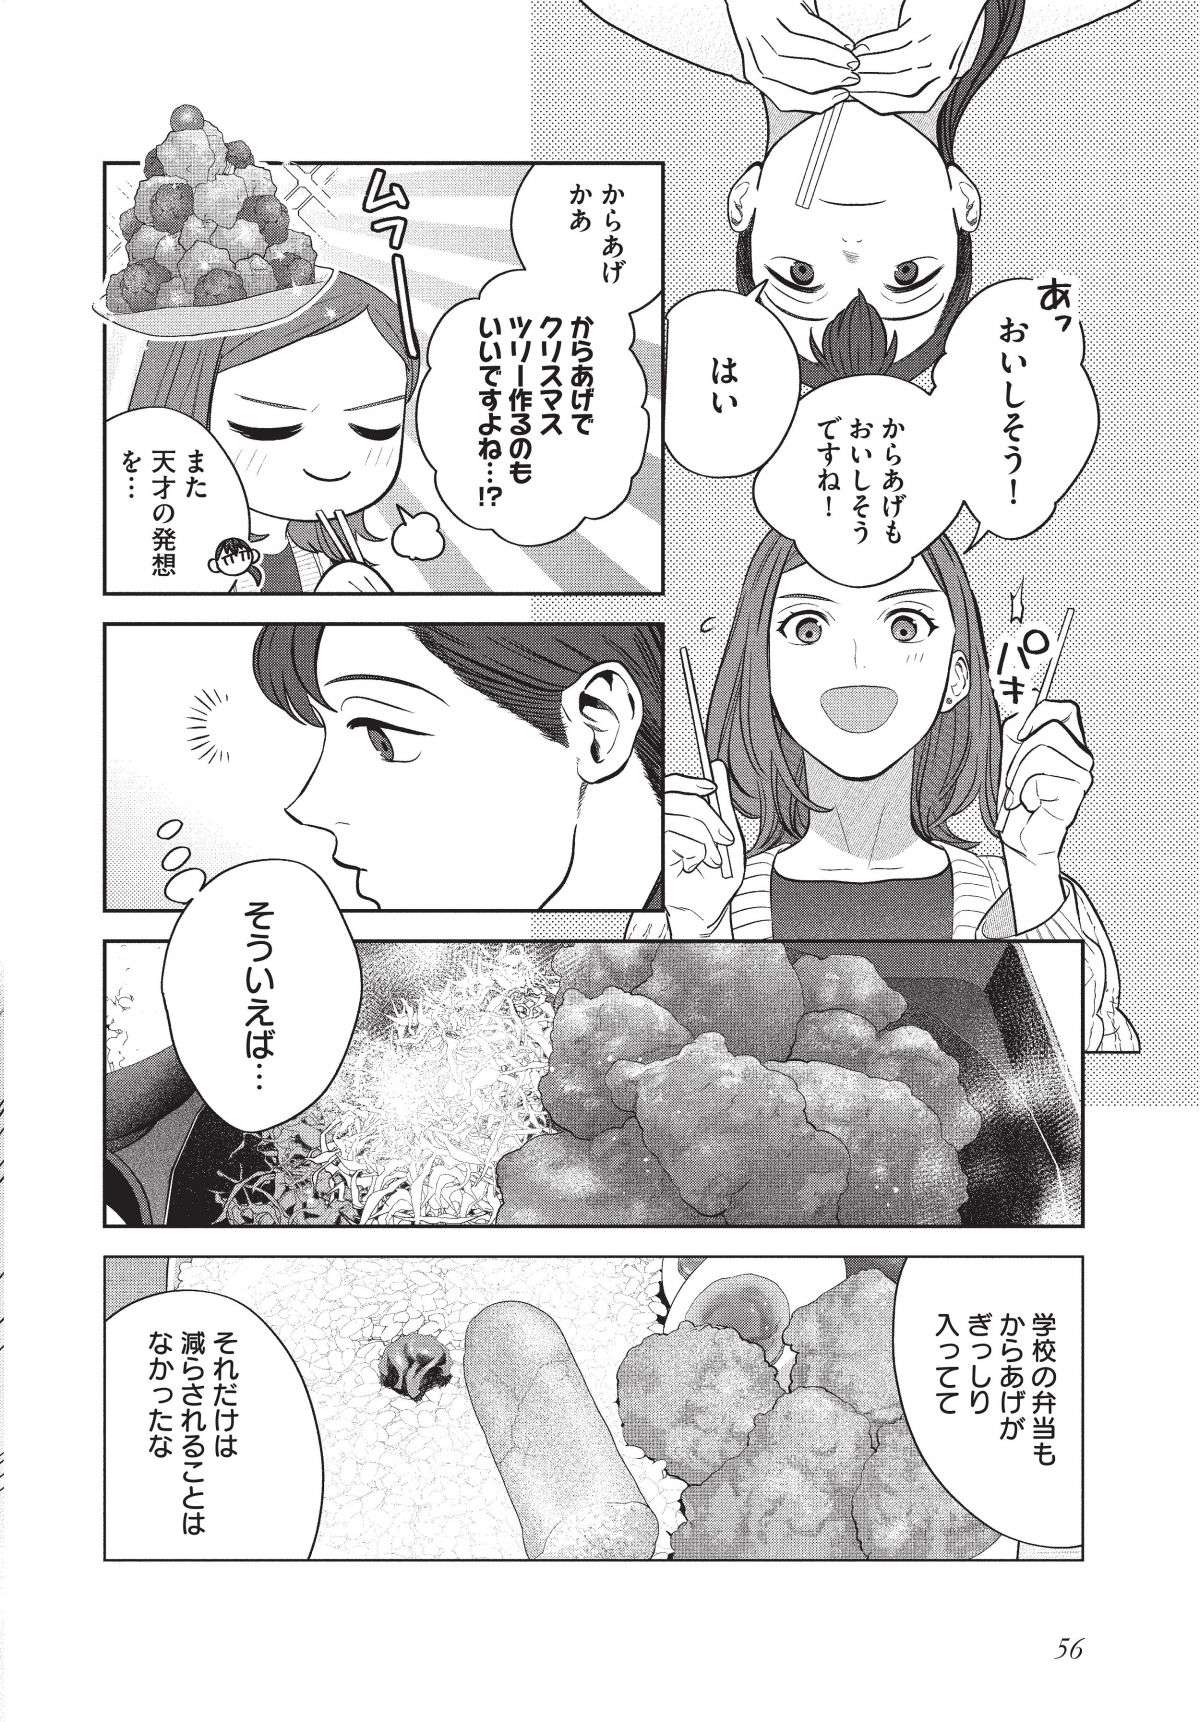 「かわいいんだよなあ」NHKドラマも好評だった「つくたべ」気持ちに気付いた瞬間／作りたい女と食べたい女2 tsukutabe2.4-8.jpg